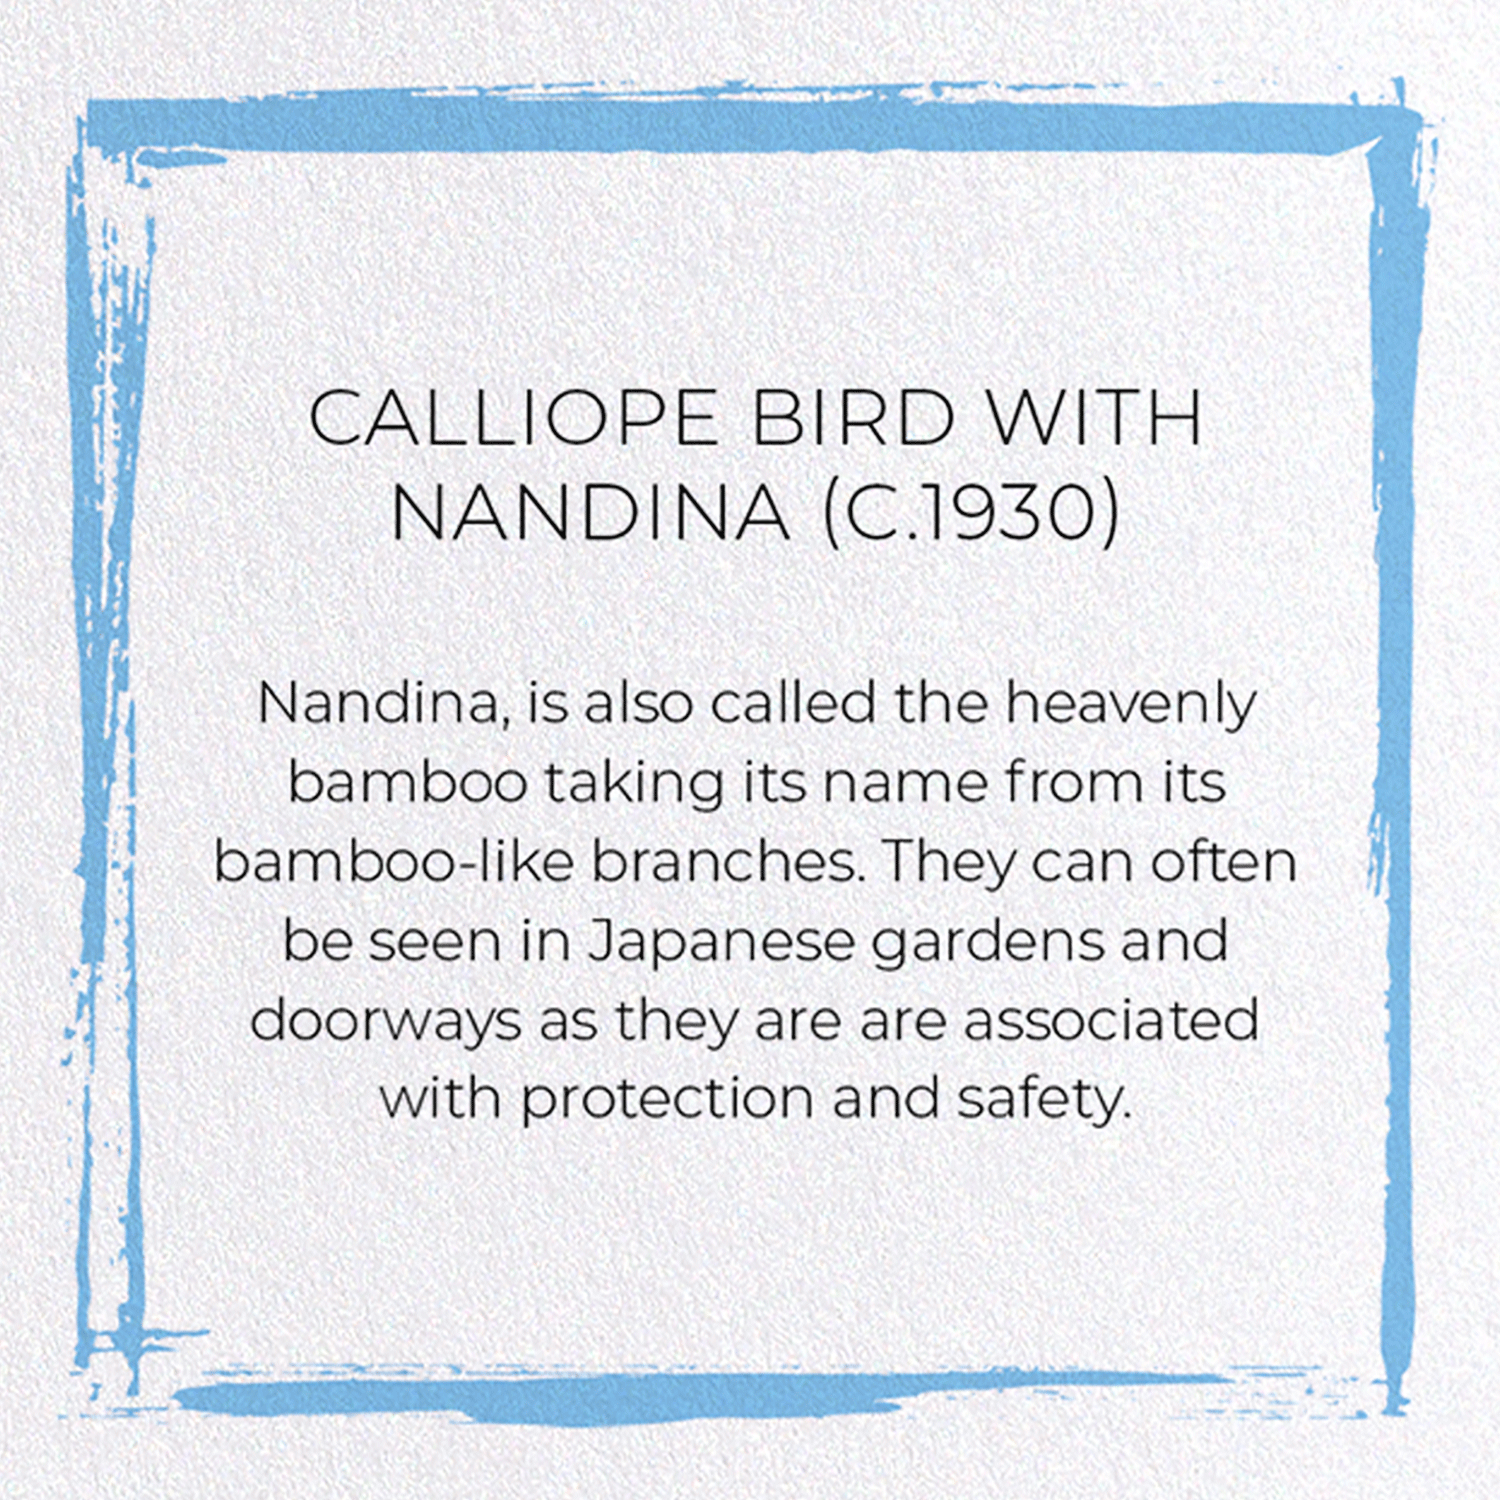 CALLIOPE BIRD WITH NANDINA (C.1930)